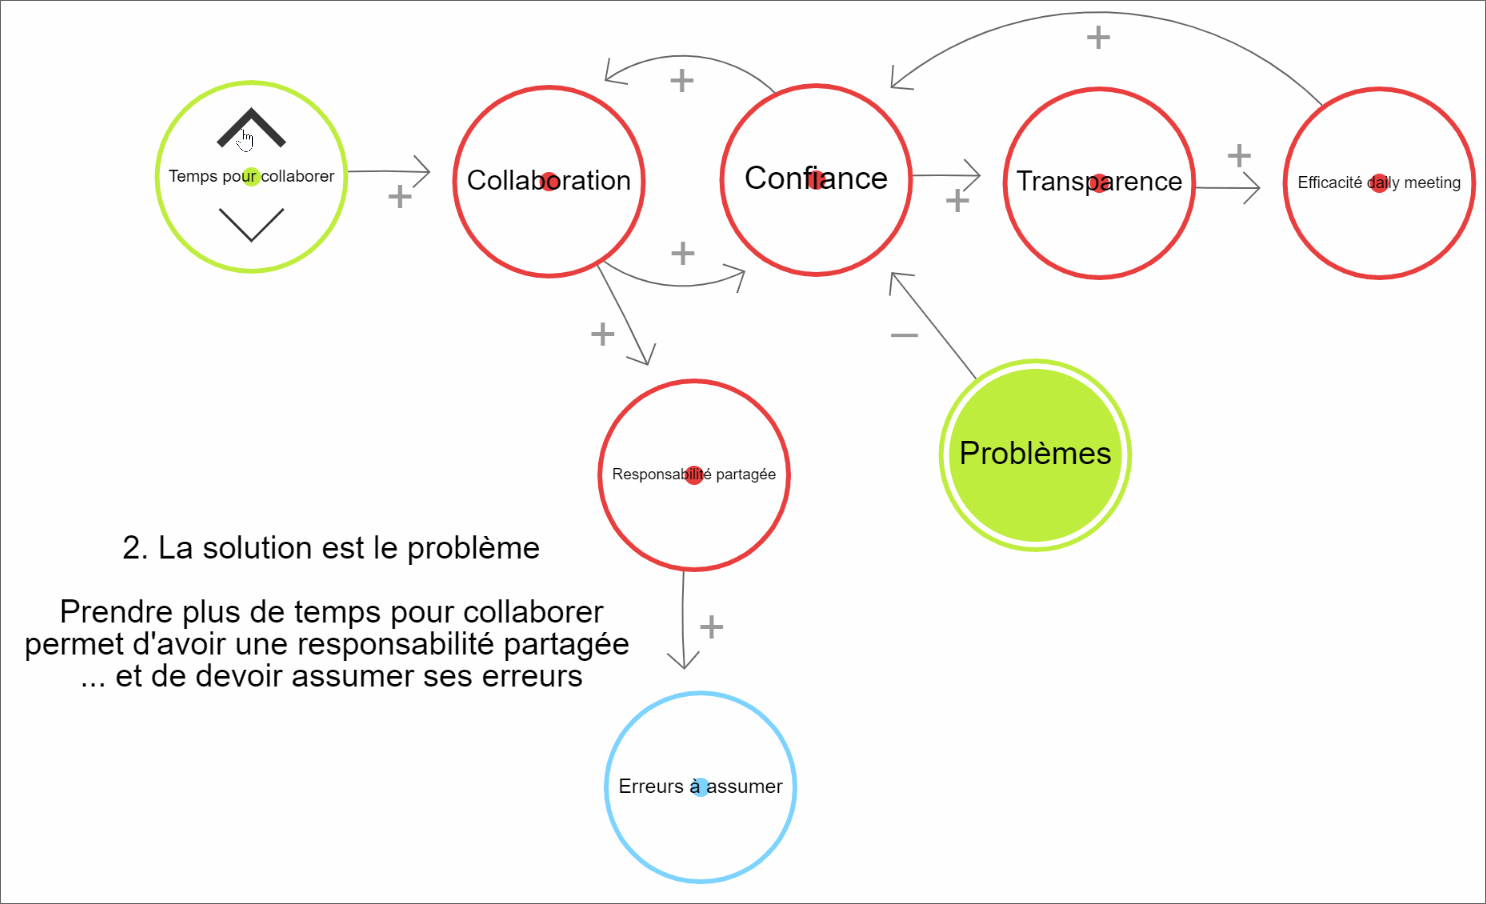 blog_solution_est_le_probleme